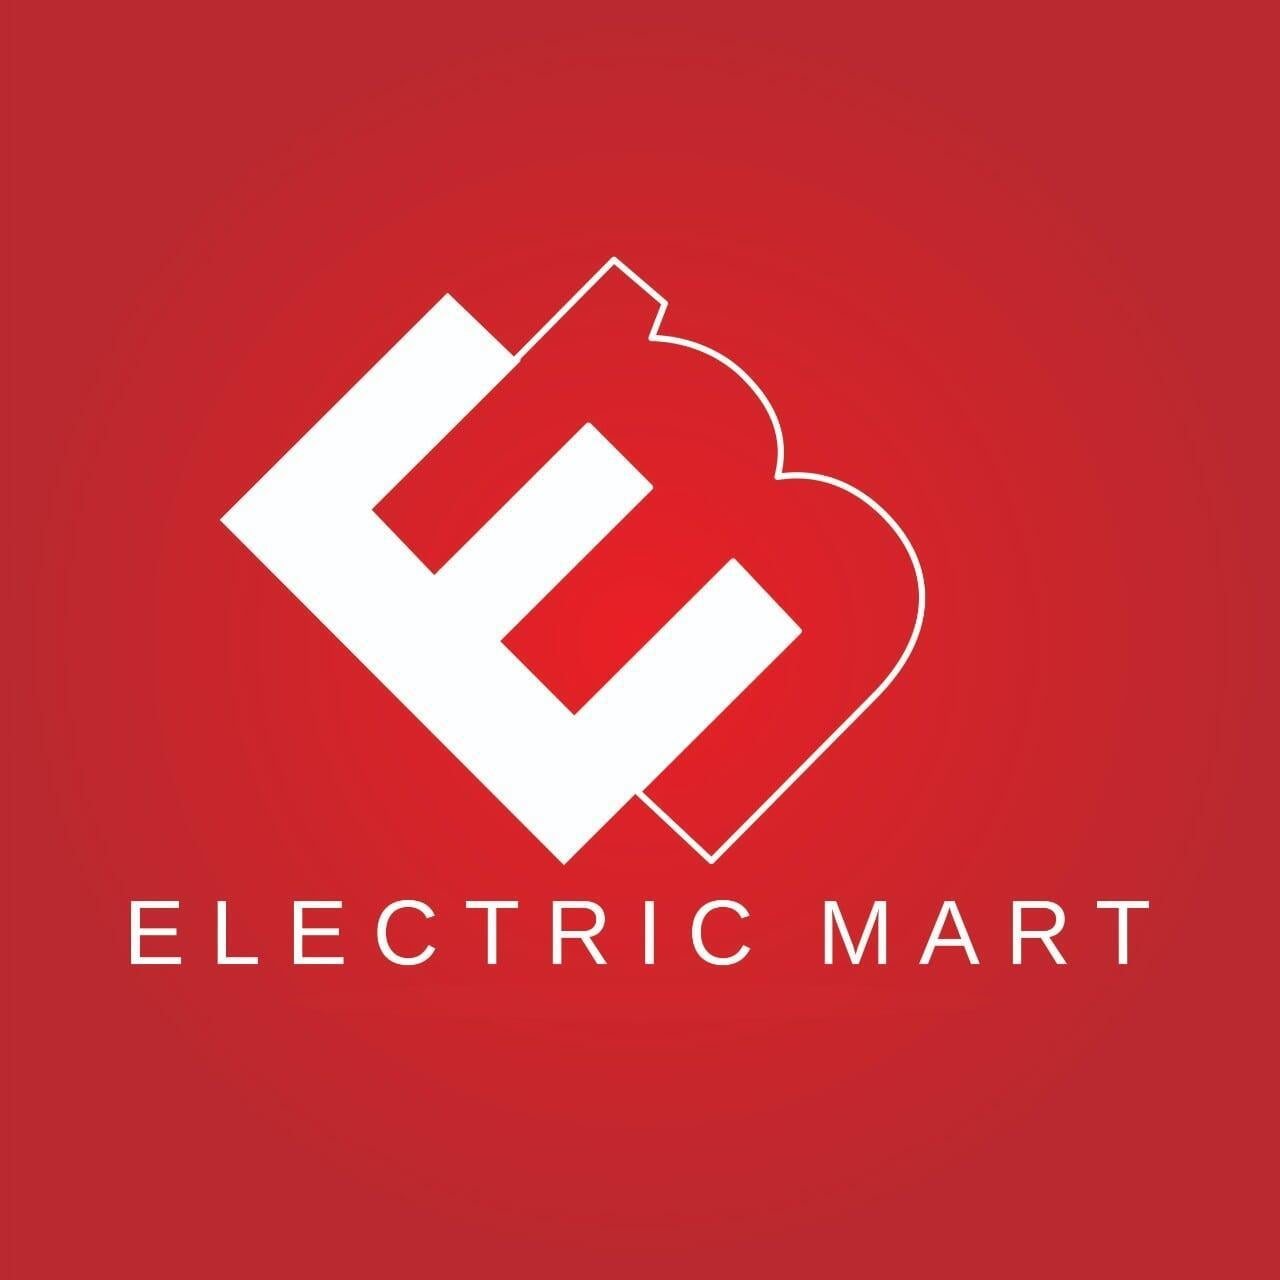 www.electricmart.co.in